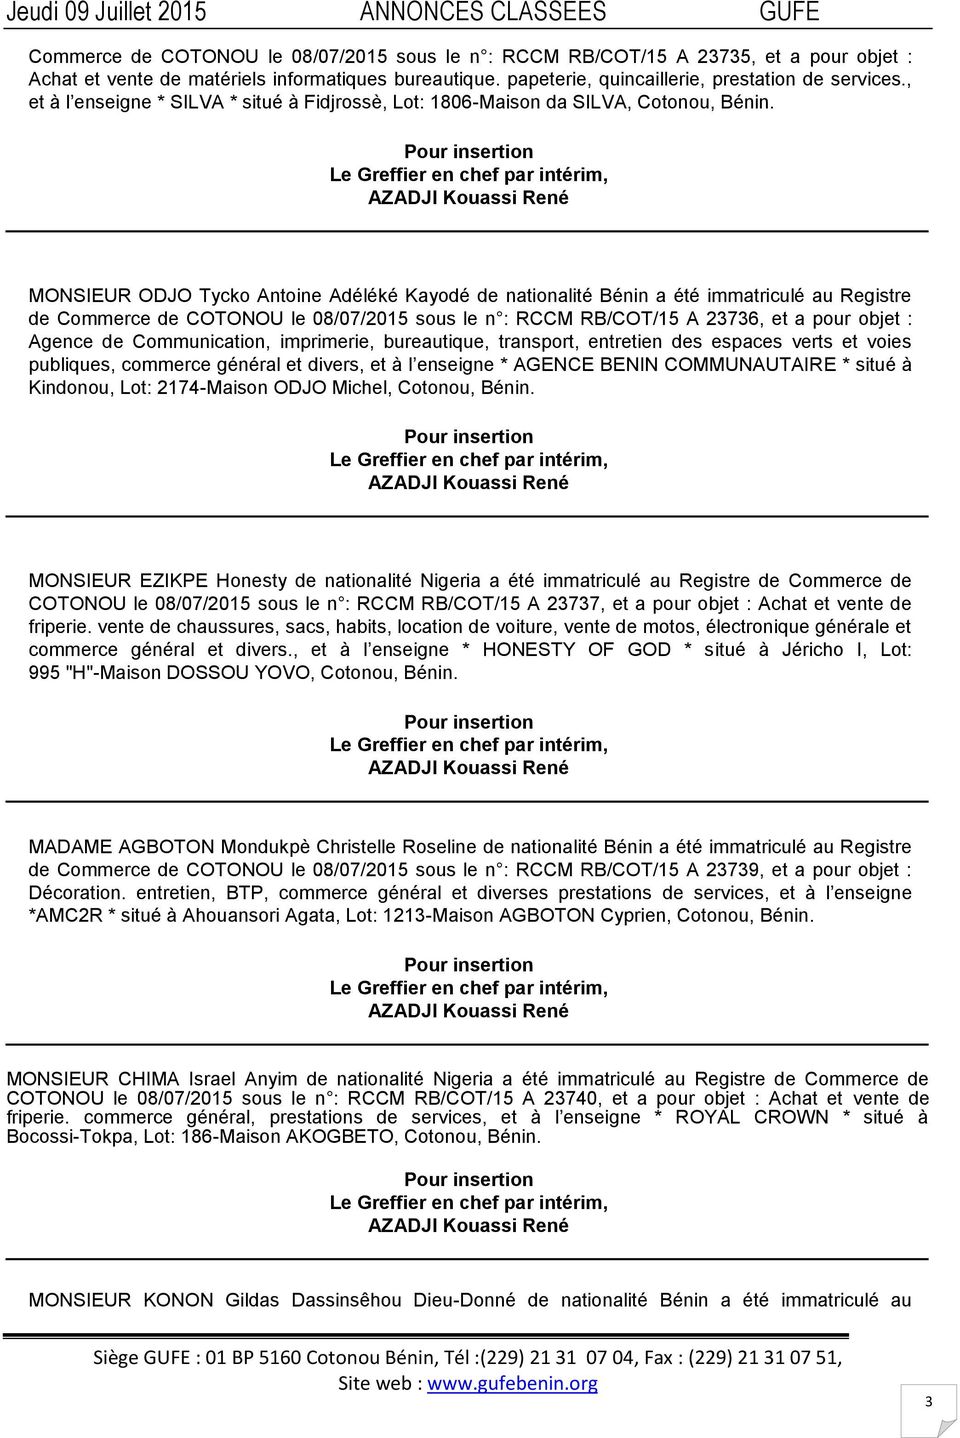 MONSIEUR ODJO Tycko Antoine Adéléké Kayodé de nationalité Bénin a été immatriculé au Registre de Commerce de COTONOU le 08/07/2015 sous le n : RCCM RB/COT/15 A 23736, et a pour objet : Agence de